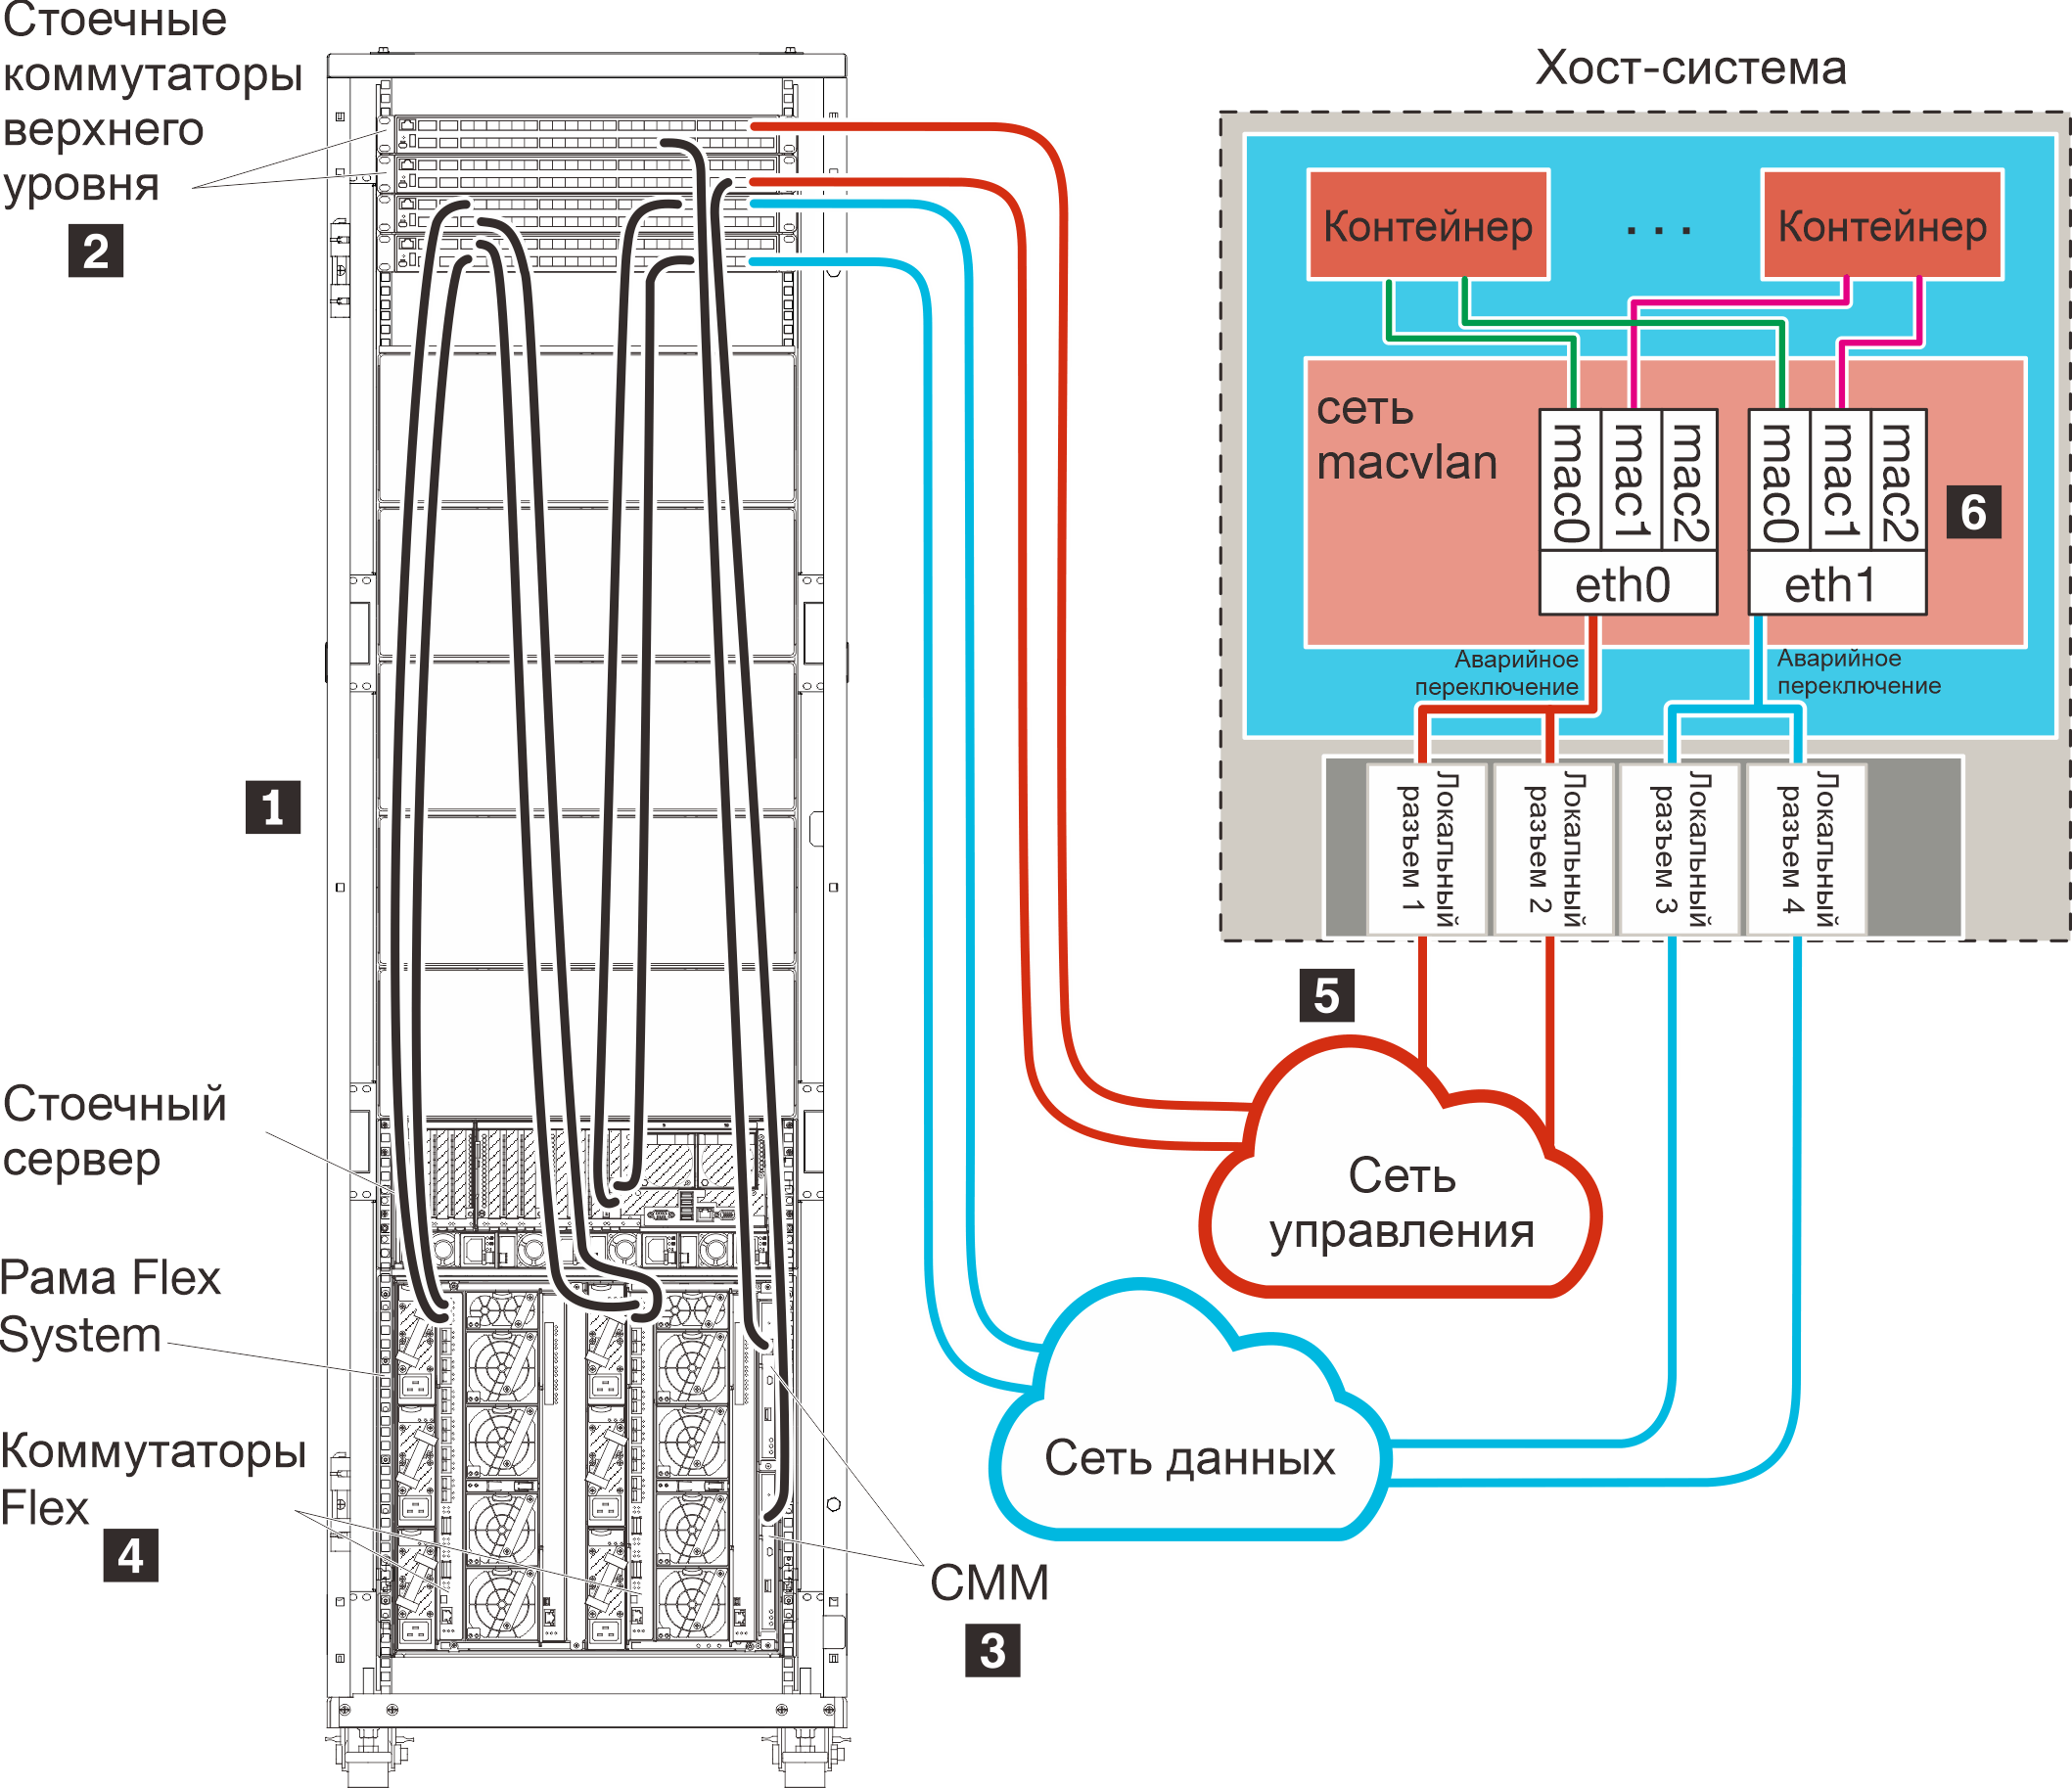 Физически разделенные сети передачи данных и управления в среде контейнеров.